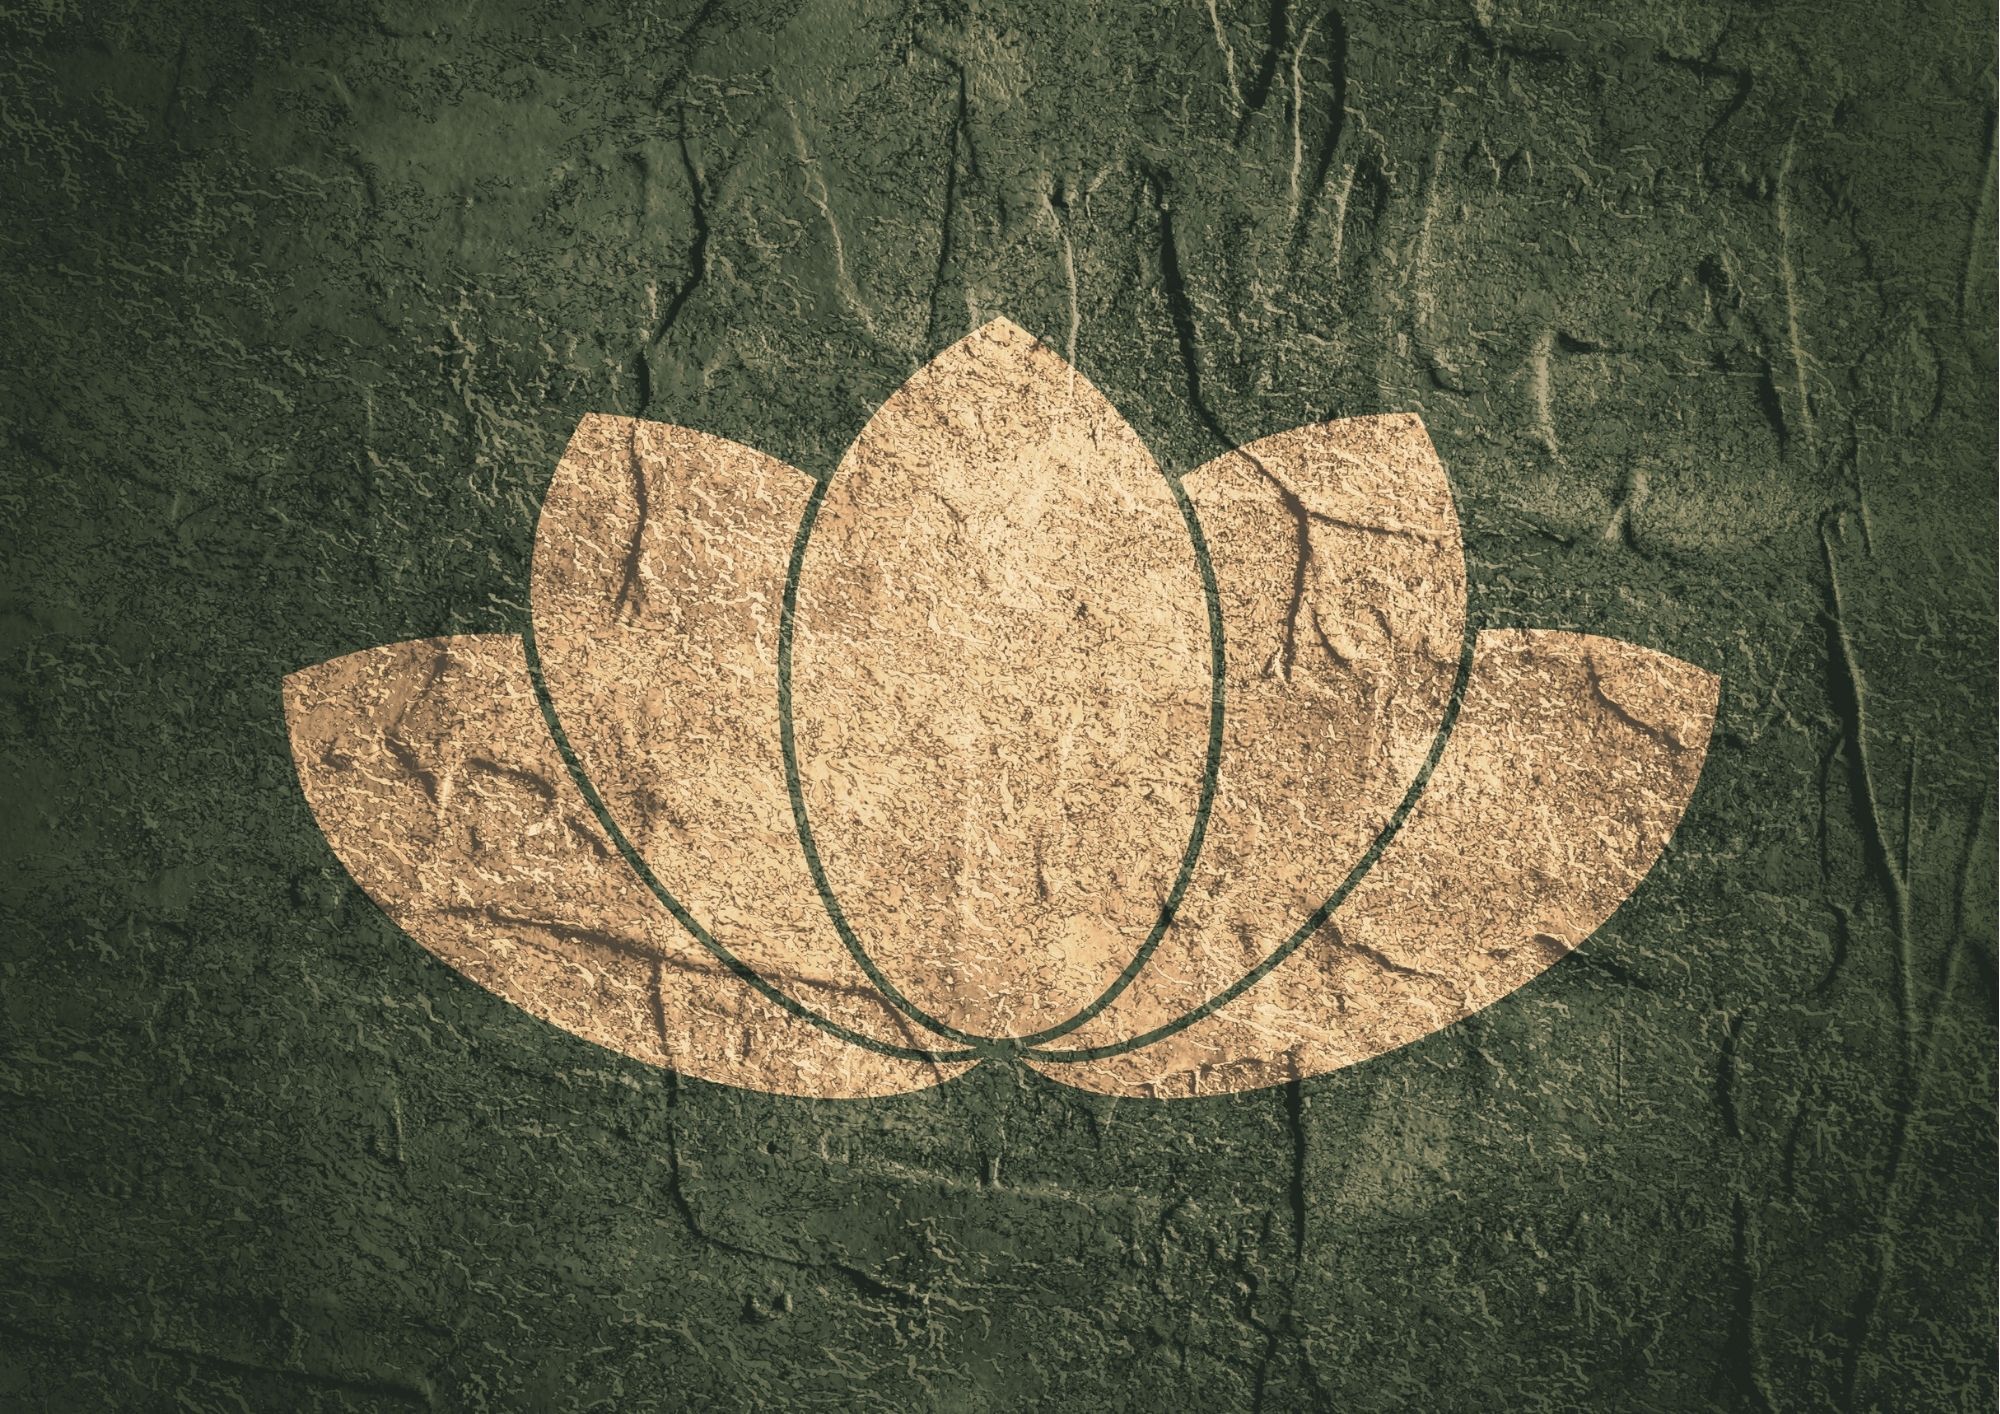 Fleur de lotus : origine, symbole et signification - Plaisir du Yoga